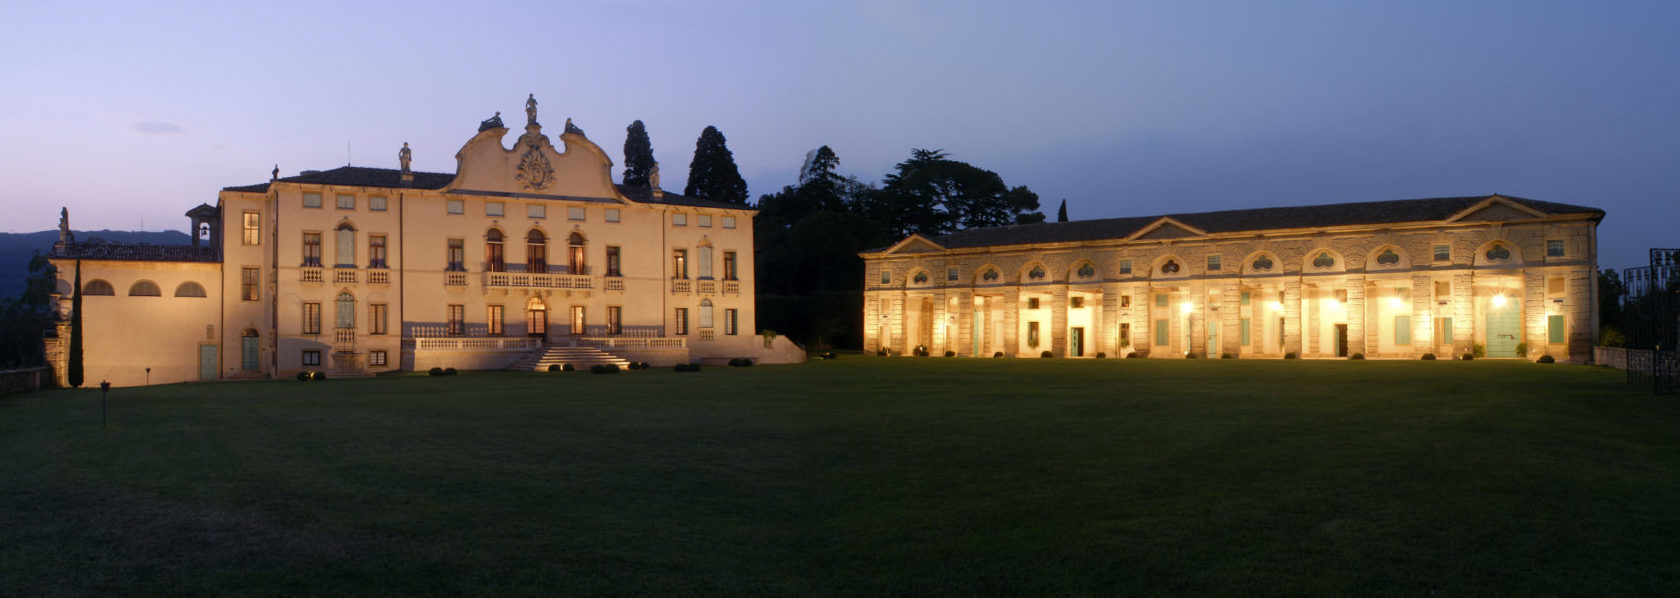 Vista notturna della Villa di Montruglio, della sua Facciata e della Barchessa illuminate, con l'ampio giardino di fronte.